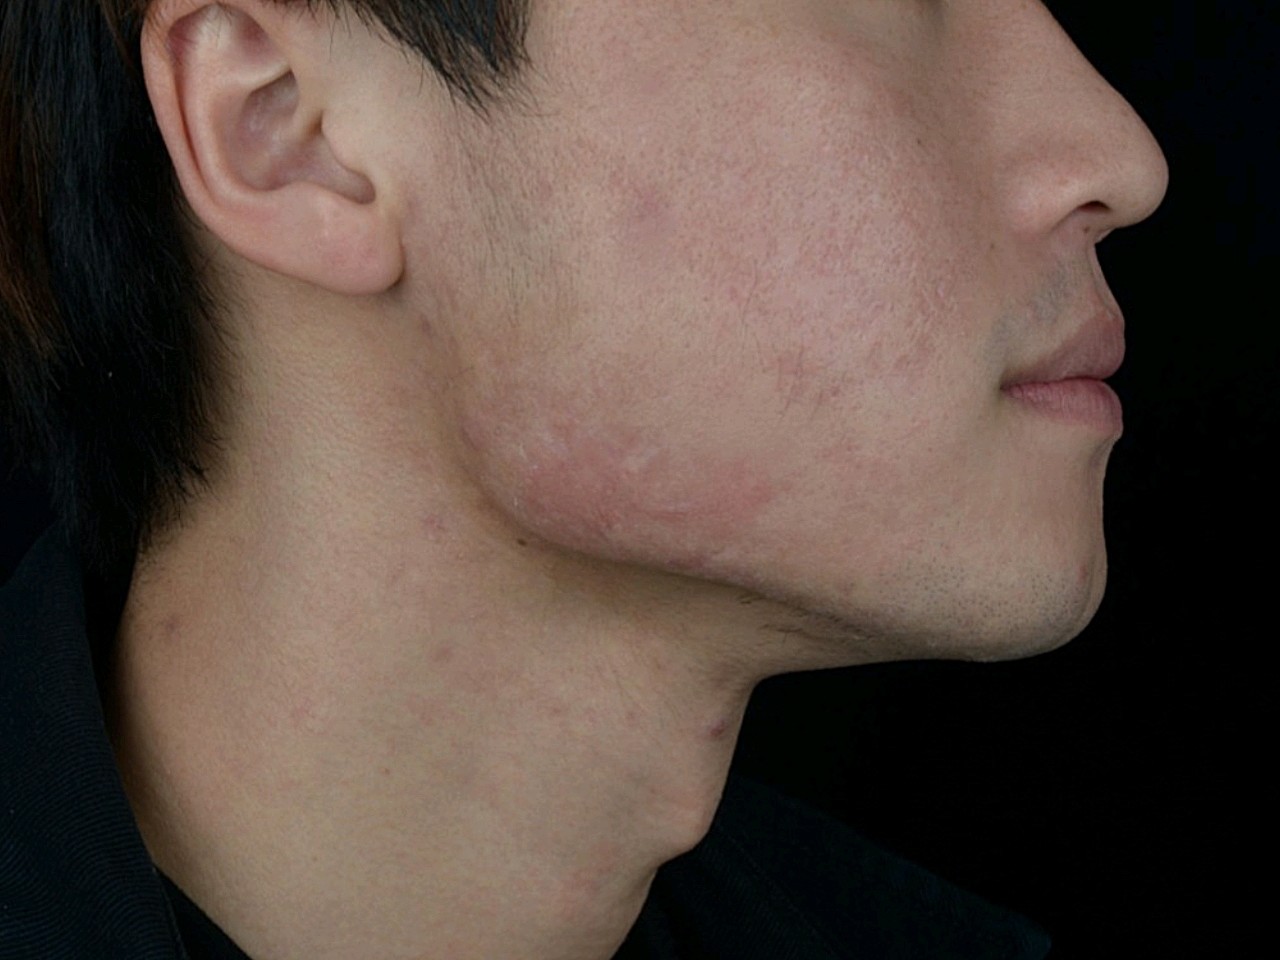 以前青春期长痘导致我两边下颌处各有一片的痘疤增生,_圈子-新氧美容